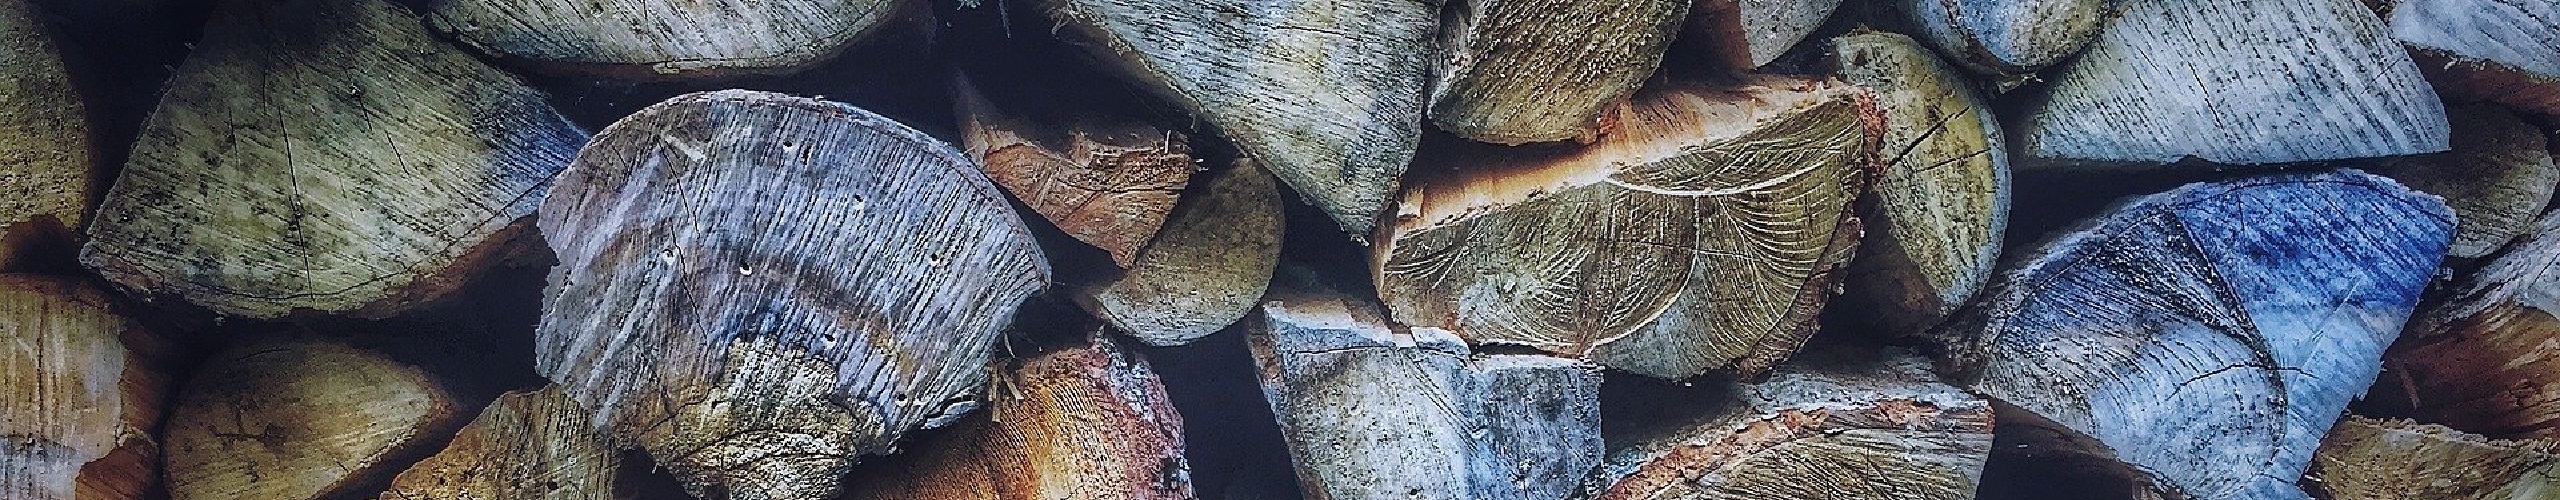 Wood pile background image